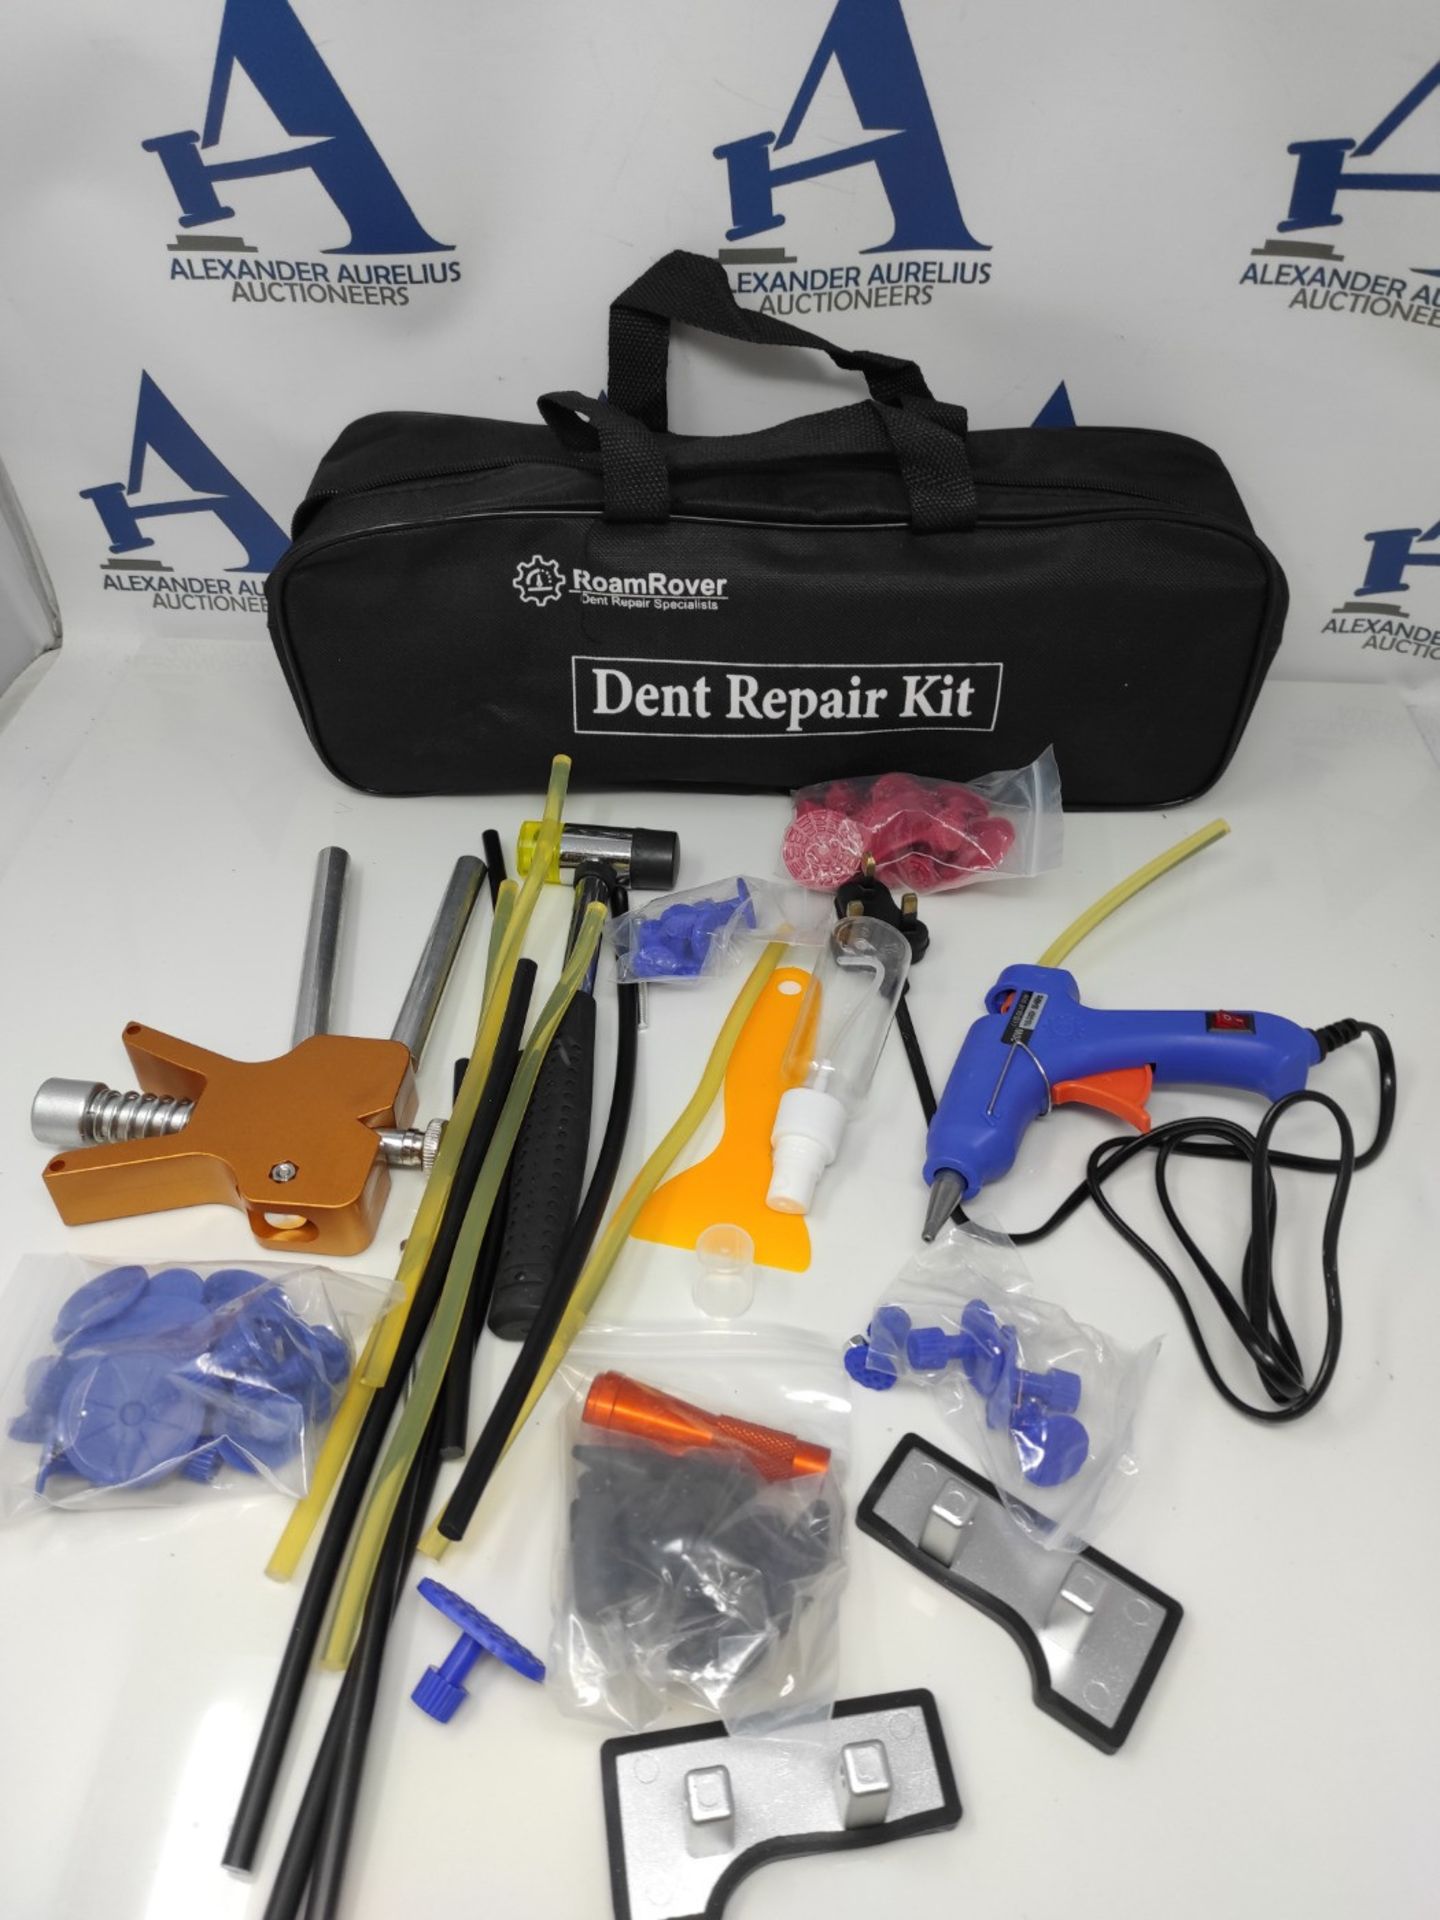 Pro-Lift Car Dent Puller Kit - 68 Piece Dent Removal Kit, Adjustable Gold Lifter Dent